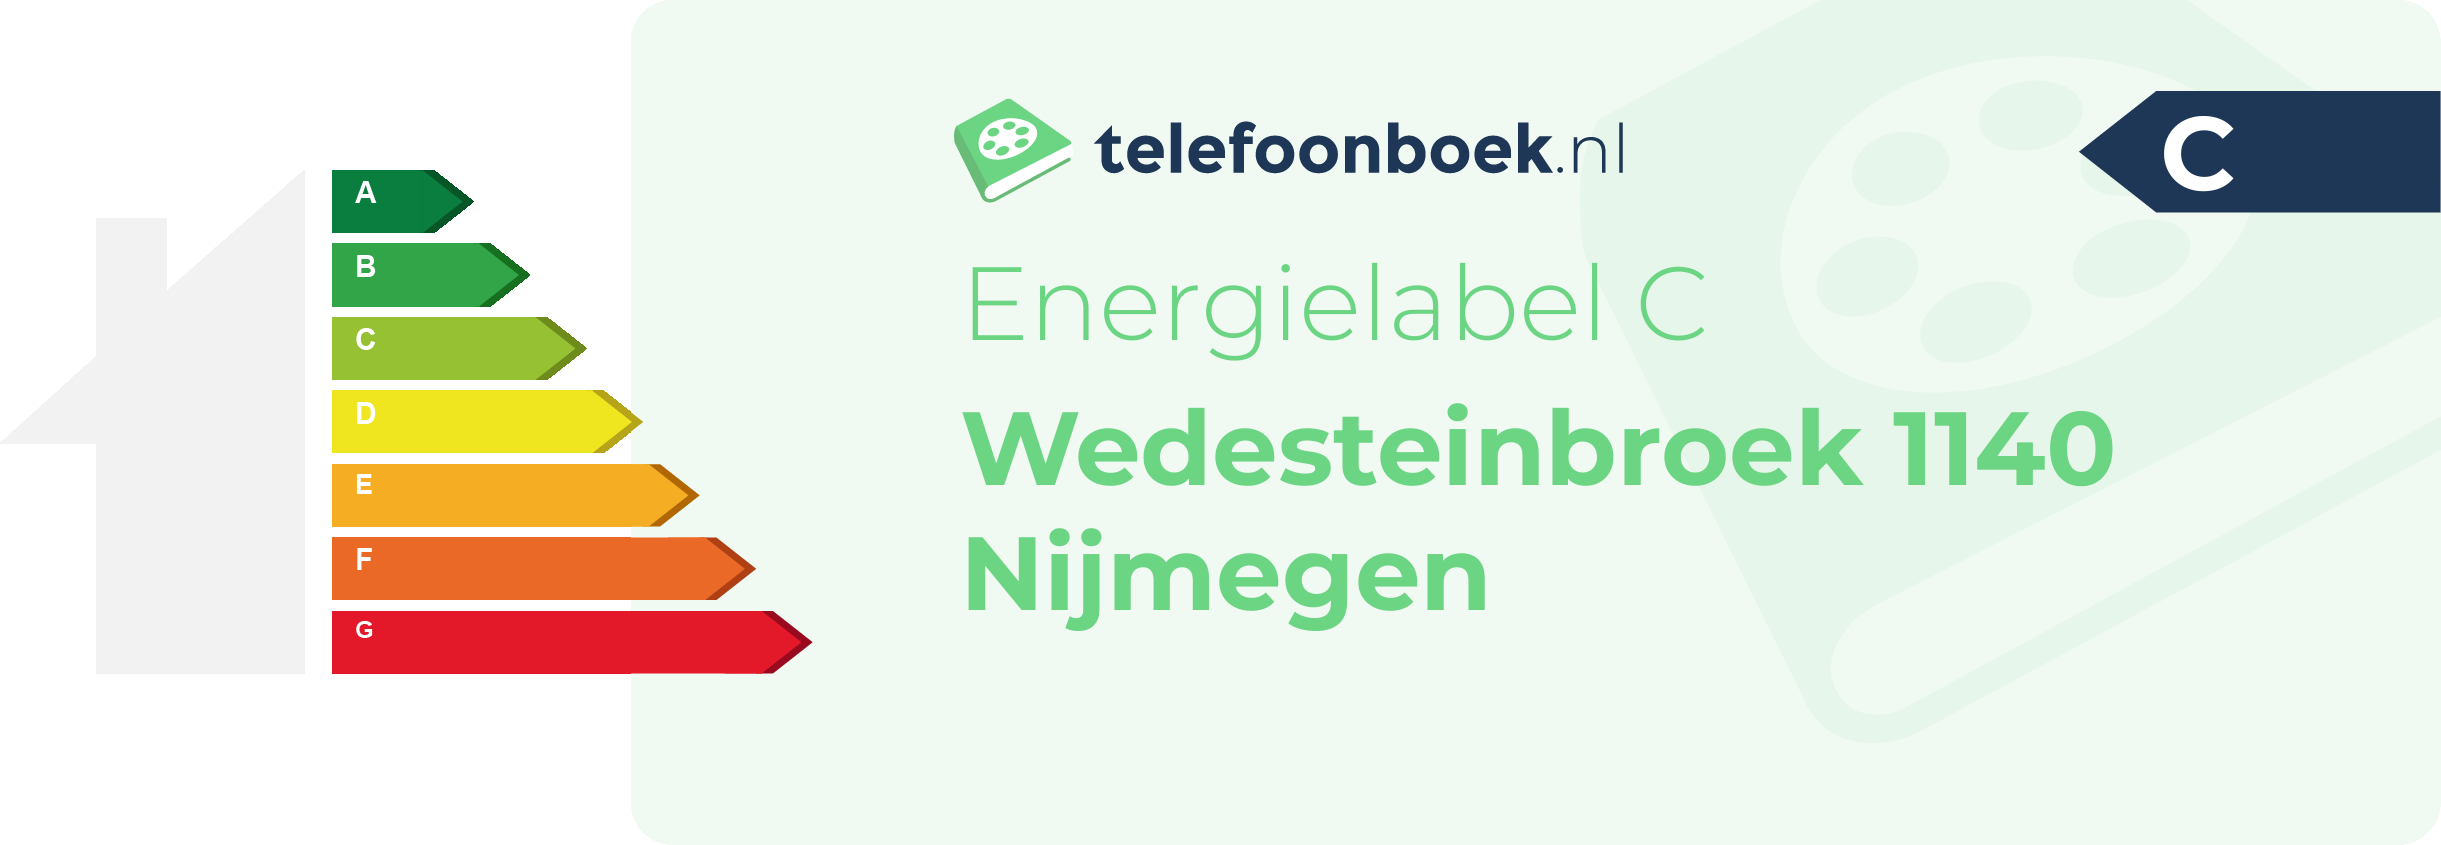 Energielabel Wedesteinbroek 1140 Nijmegen